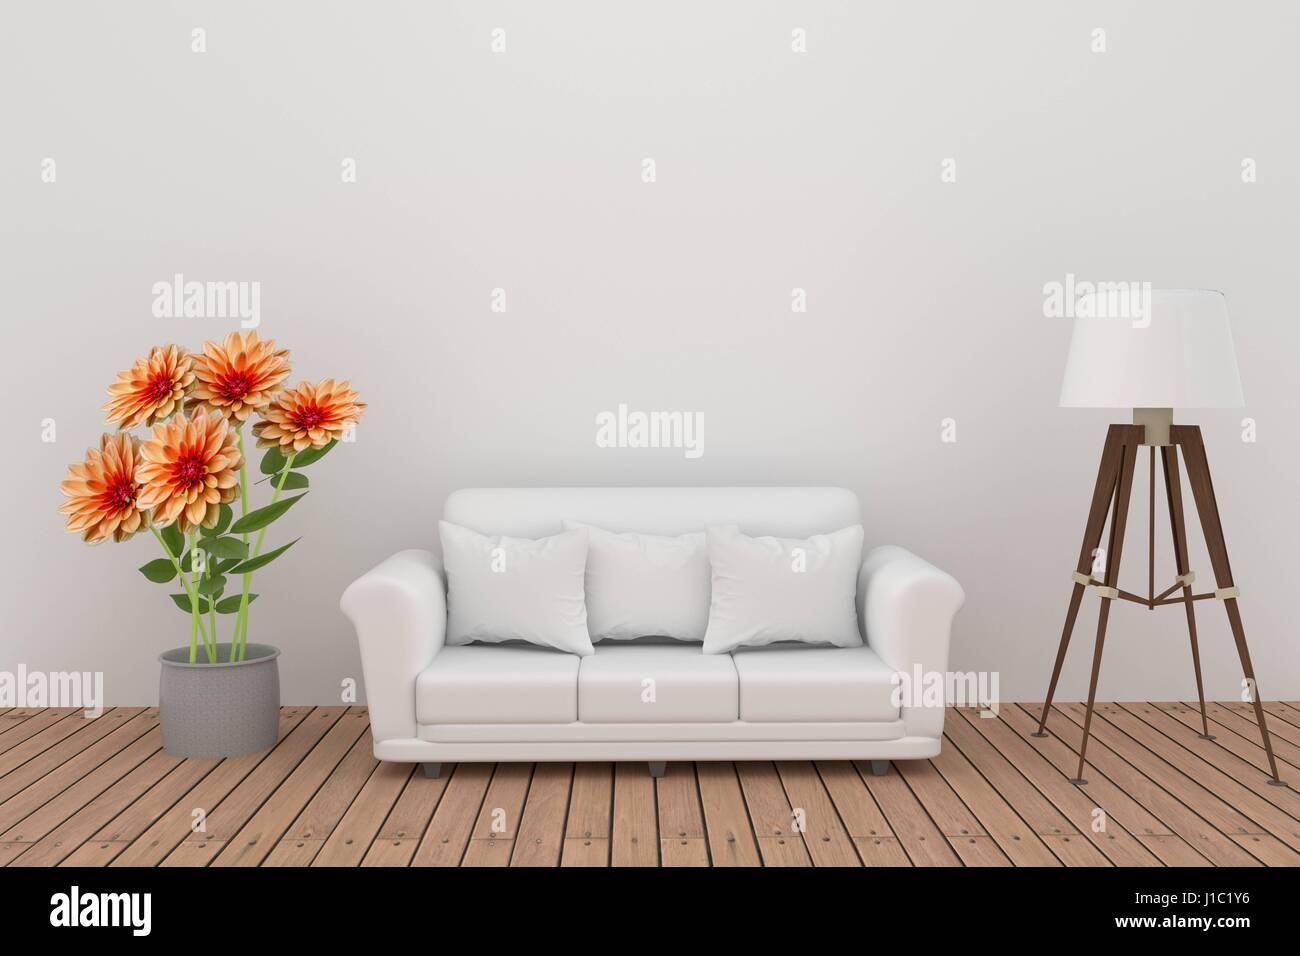 Fiore Dahlia decorazione con divano e lampada in camera bianca interno in 3D rendering Foto Stock